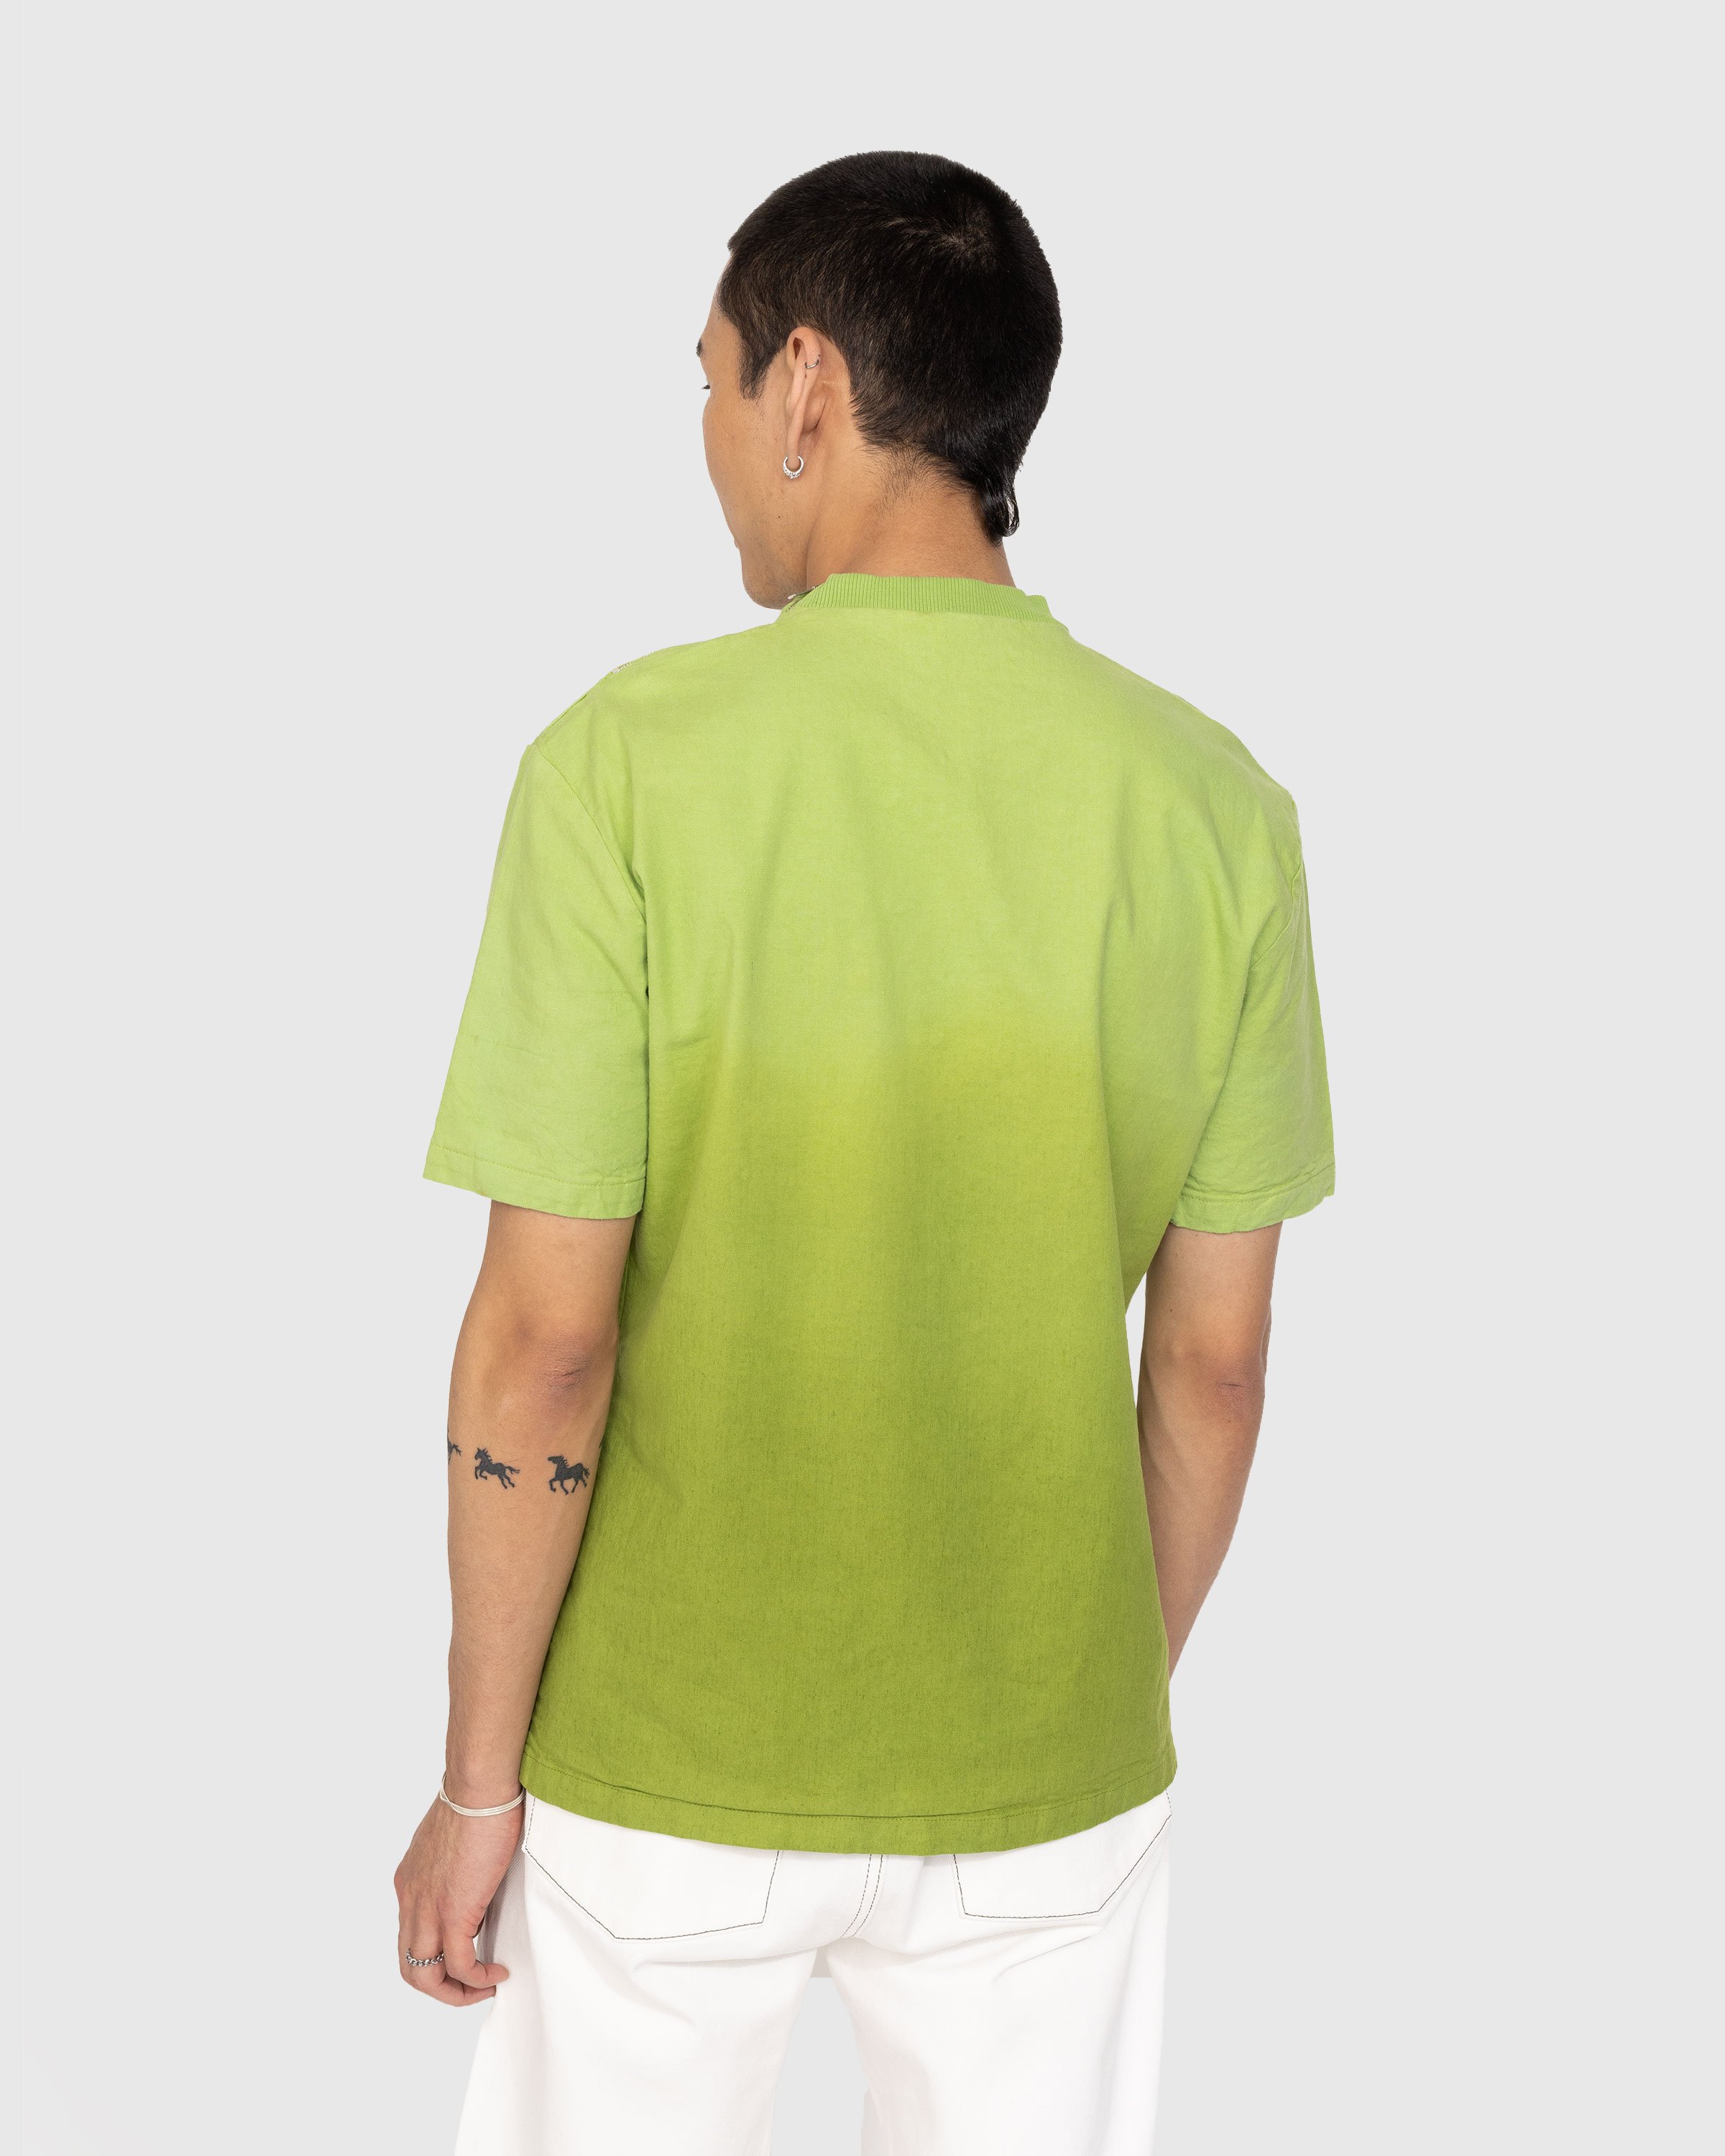 Winnie New York - Degrade Linen T-Shirt Green - Clothing - Green - Image 3